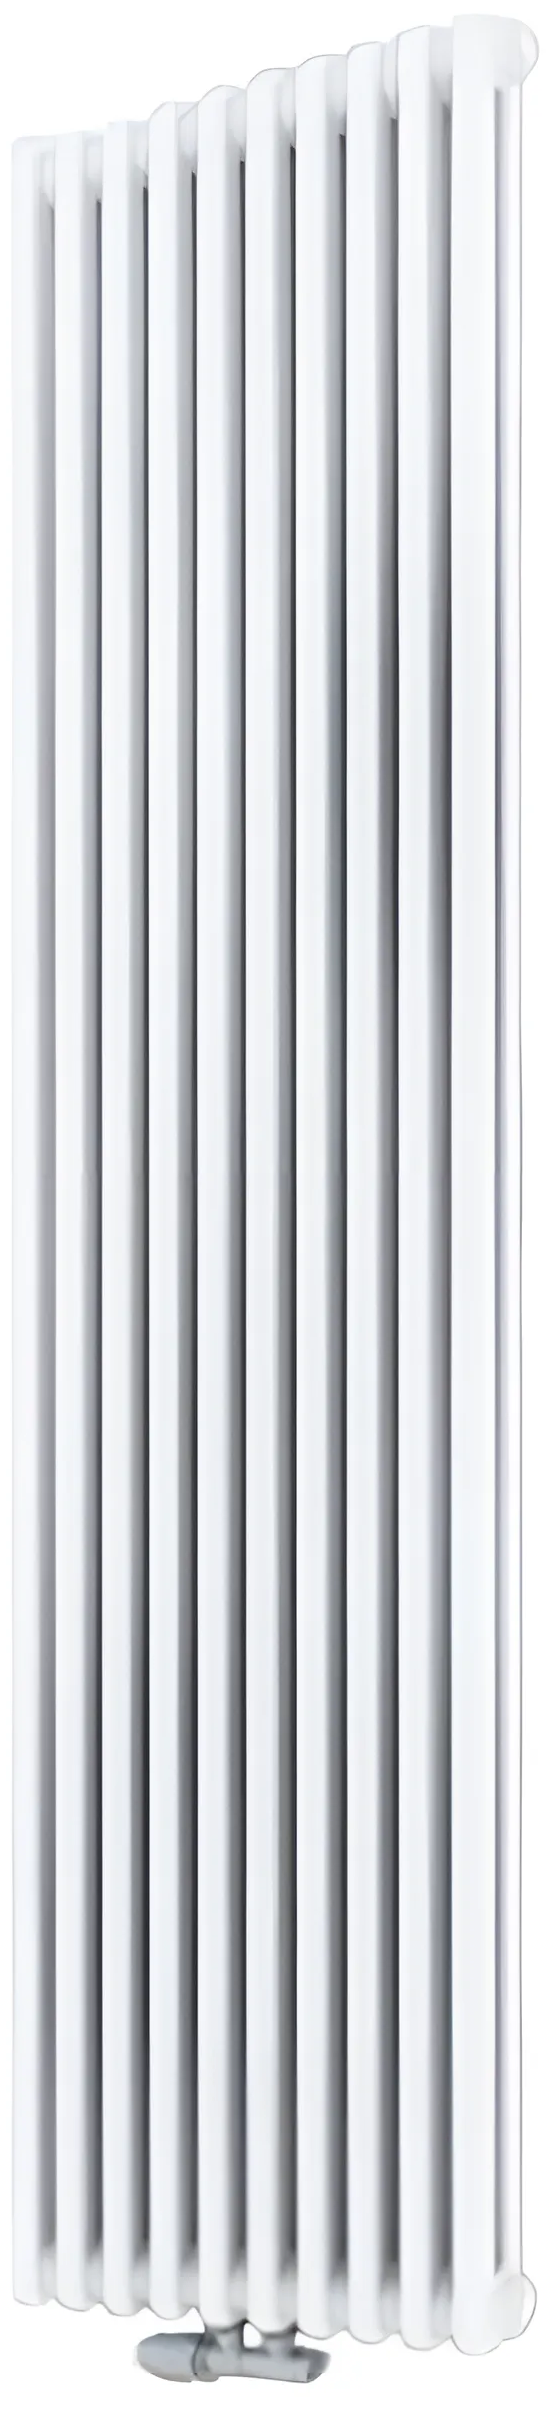 Дизайн-радиатор Cordivari Ardesia 2 колонны 10 секций H1800 мм AS6 COLOR T01